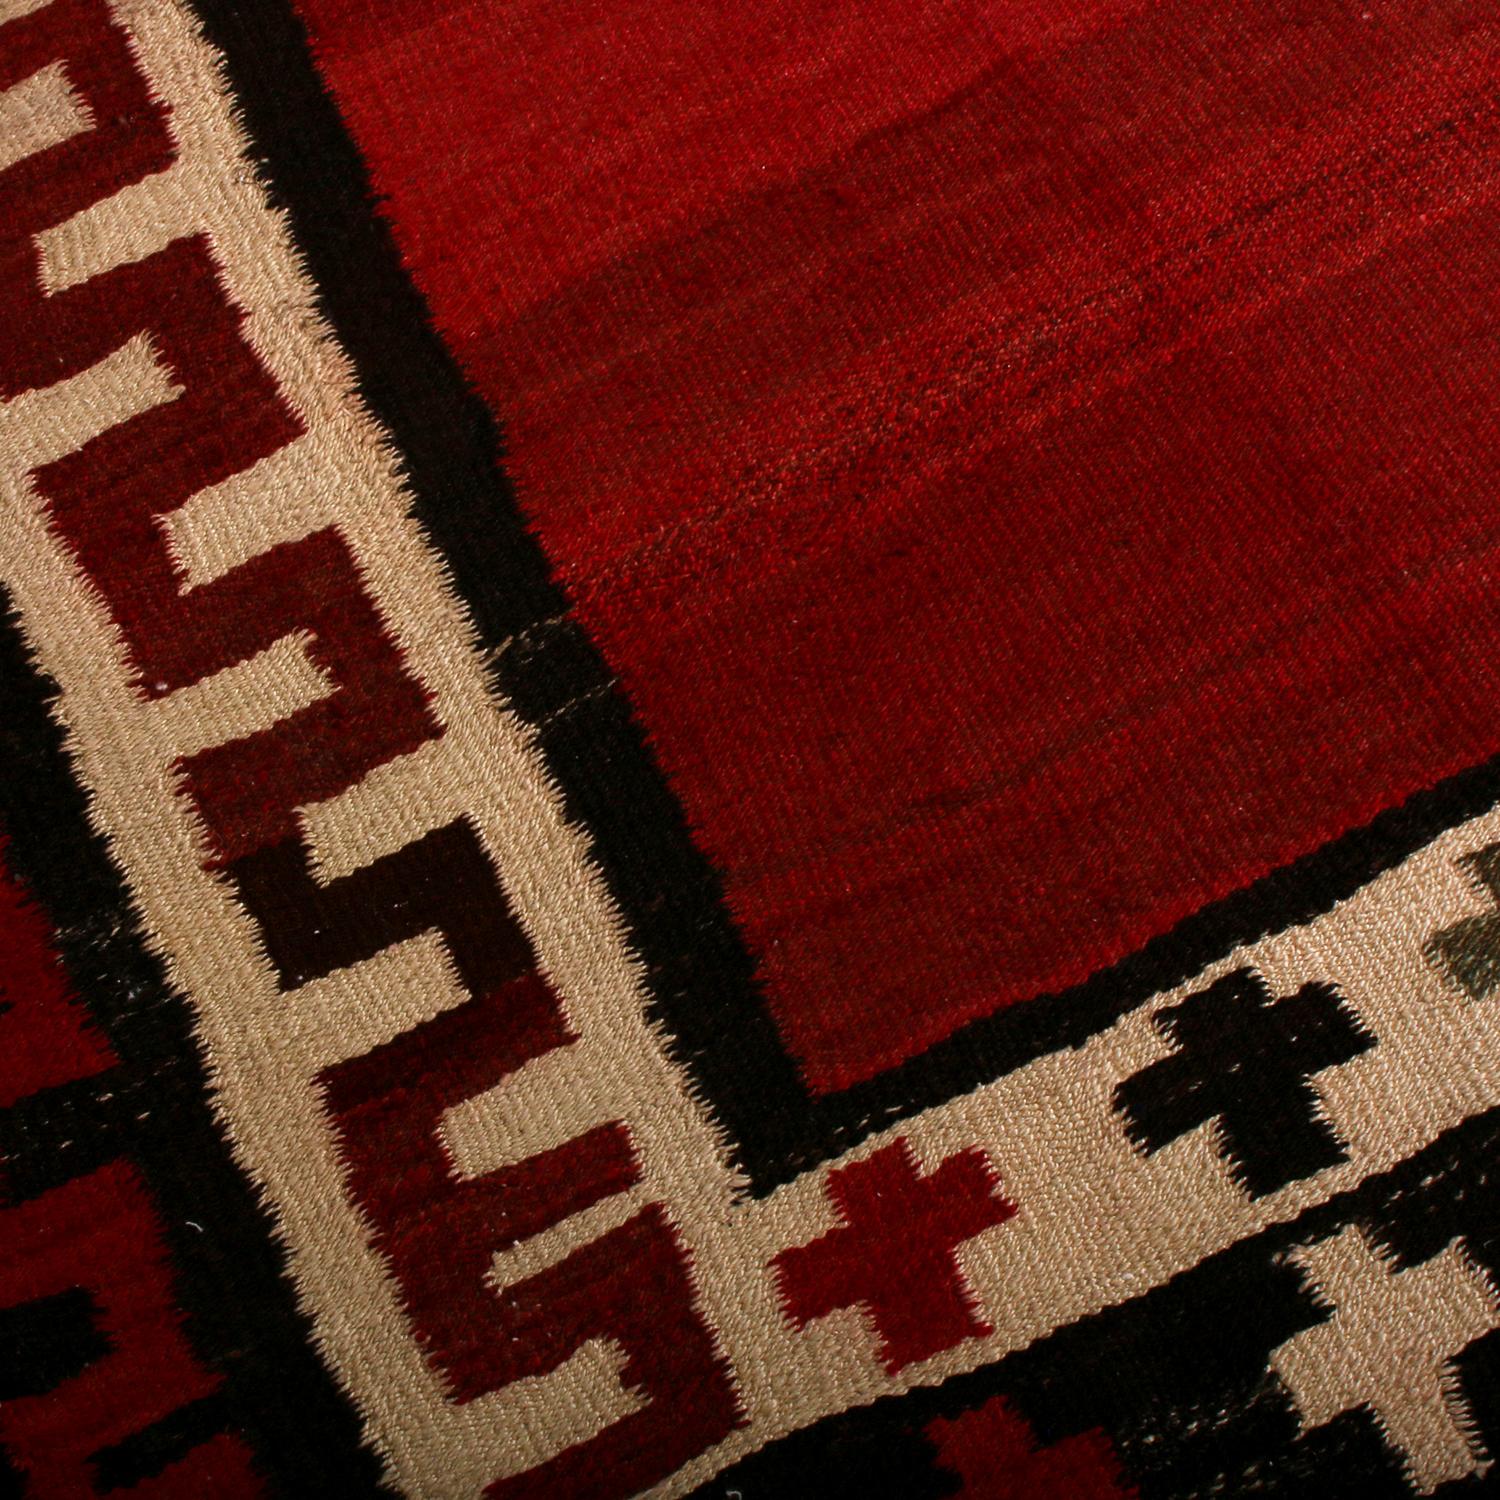 Hand-Woven Vintage Midcentury Beige Brown and Red Wool Bidjar Persian Kilim by Rug & Kilim For Sale